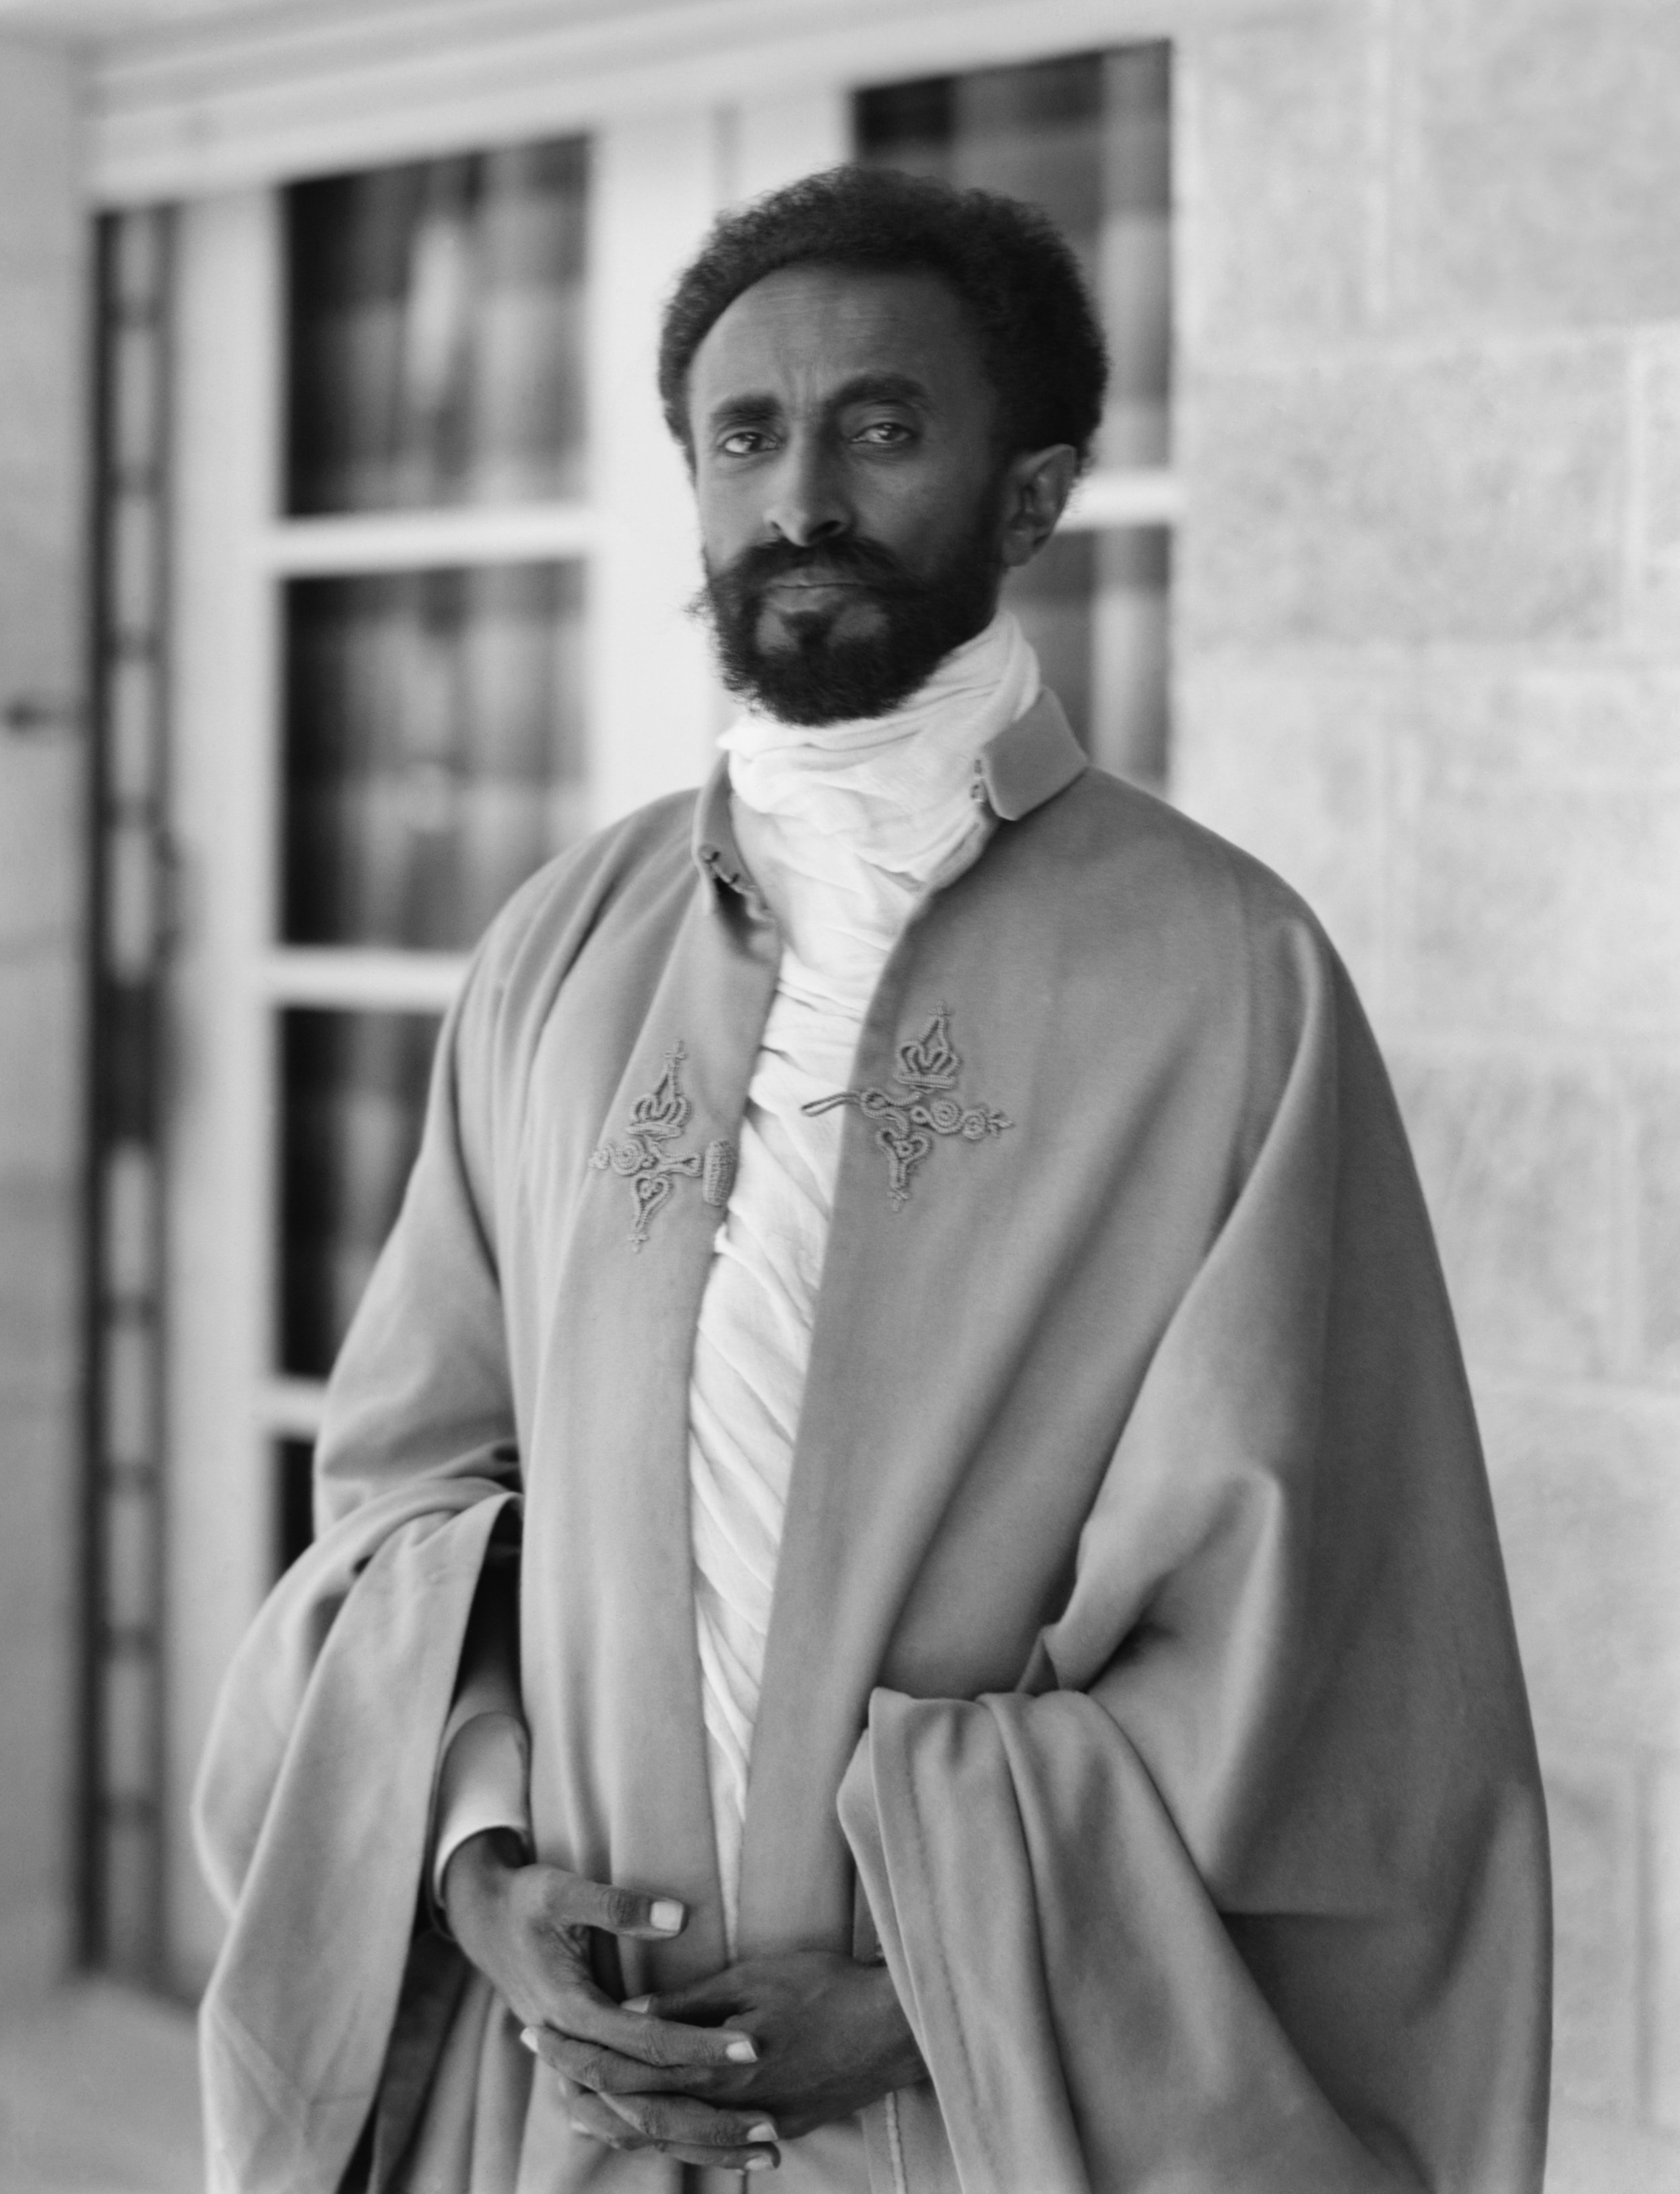 Vuelve el mejor Kapuściński con 'El emperador' Haile Selassie